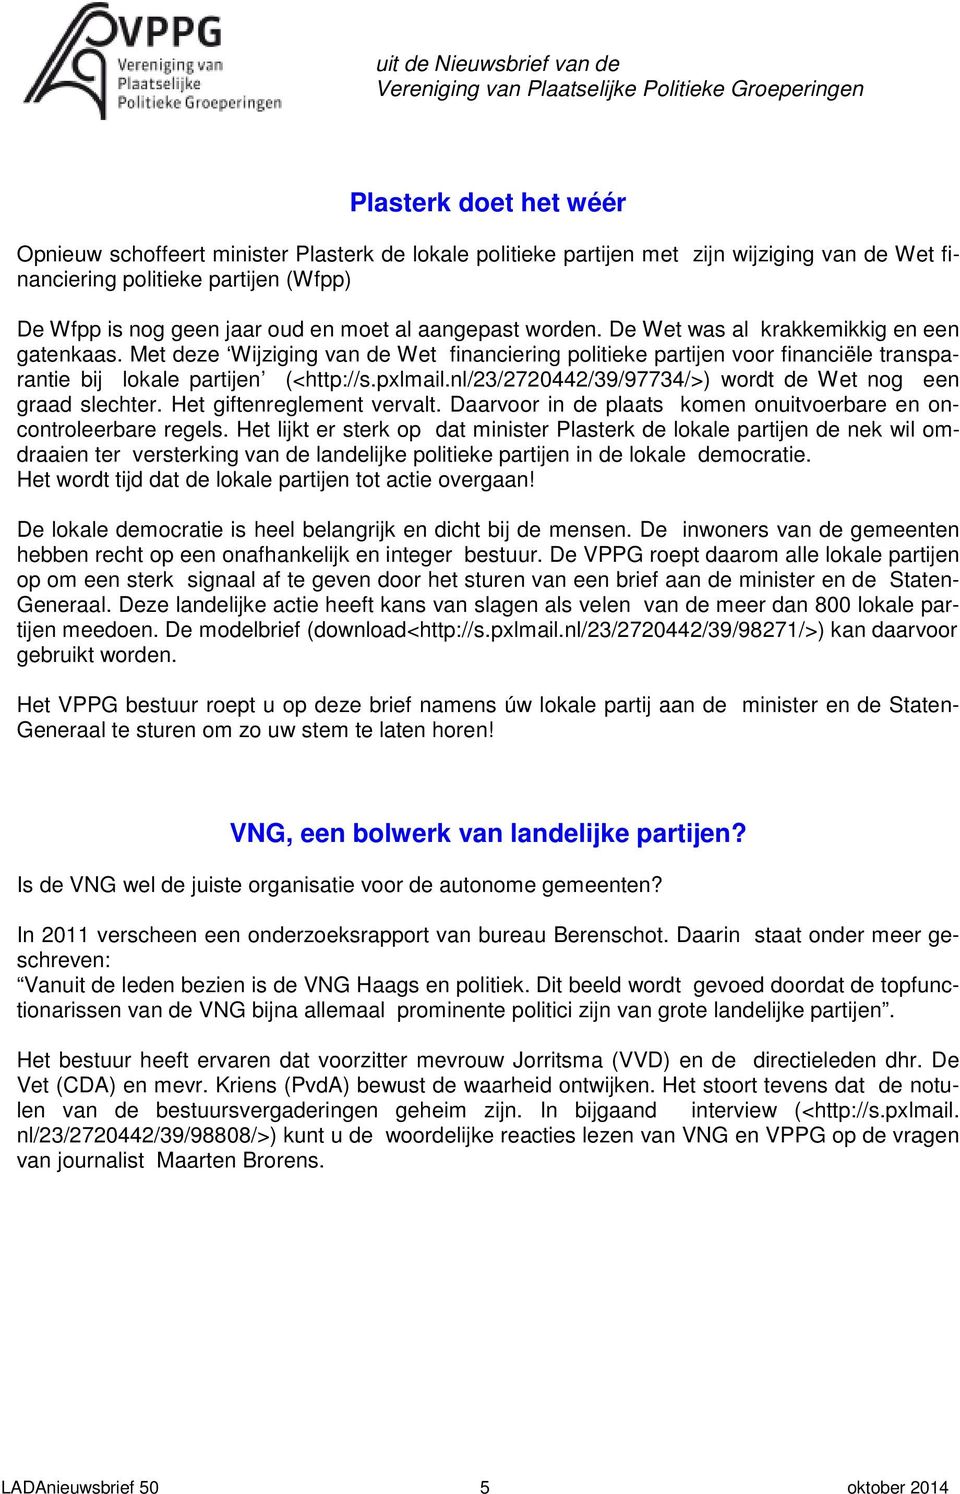 Met deze Wijziging van de Wet financiering politieke partijen voor financiële transparantie bij lokale partijen (<http://s.pxlmail.nl/23/2720442/39/97734/>) wordt de Wet nog een graad slechter.